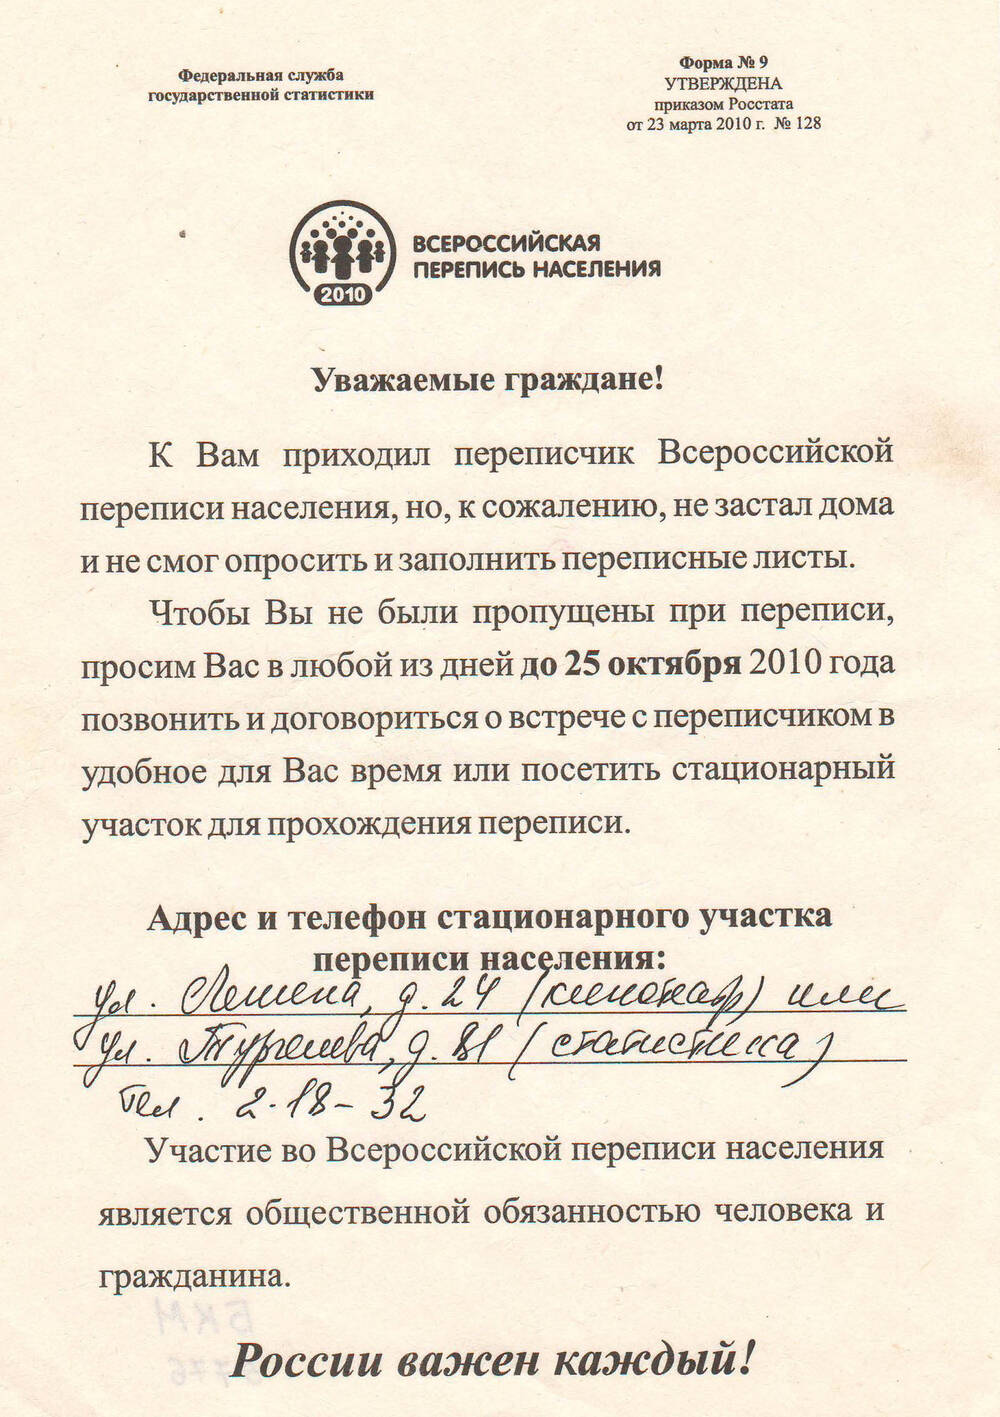 Листовка с обращением принять участие во Всероссийской переписи населения.